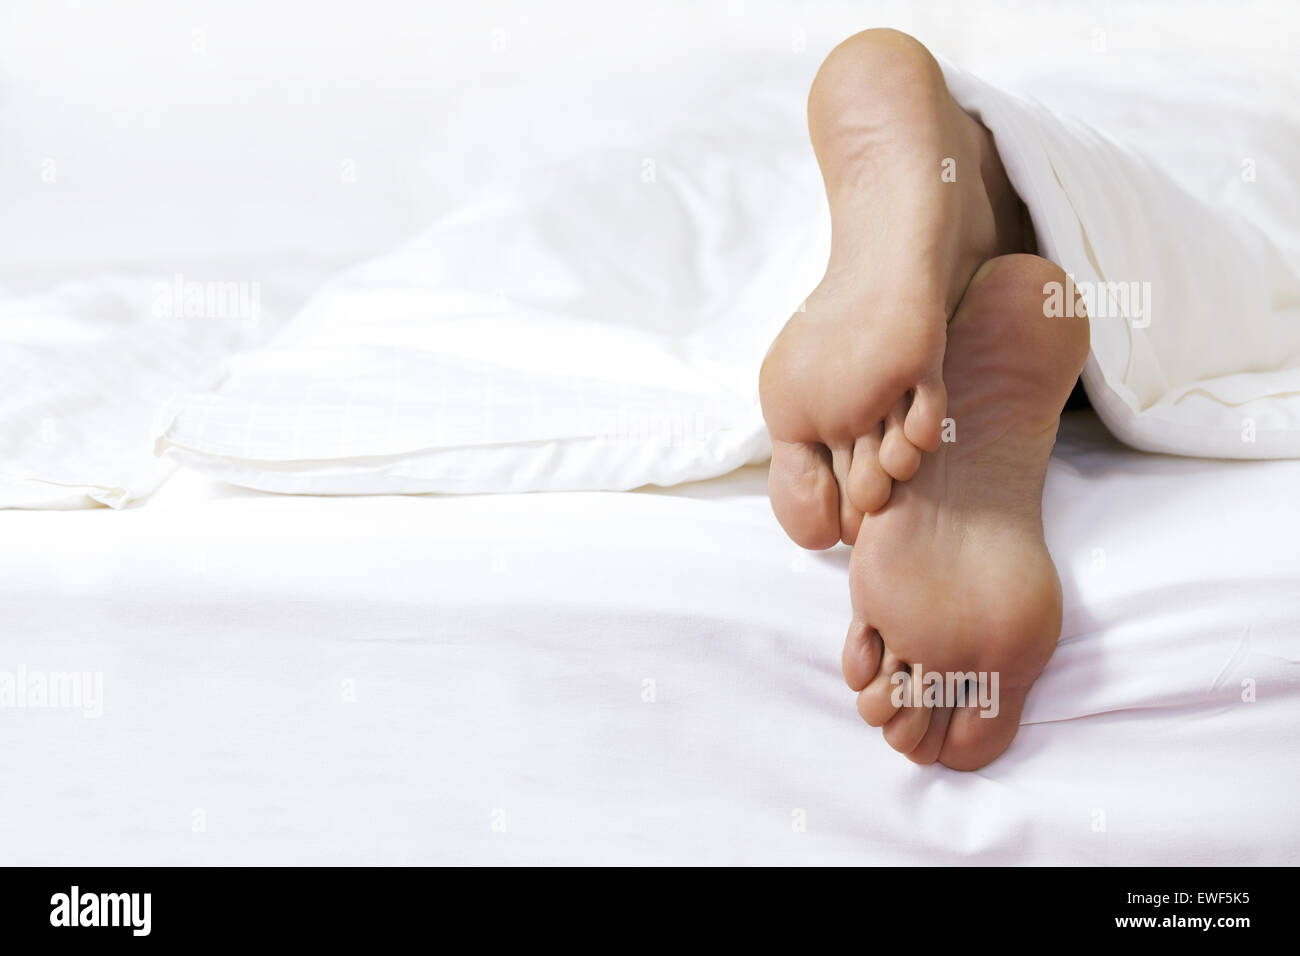 Jemandes Fuß im Bett Stockfoto